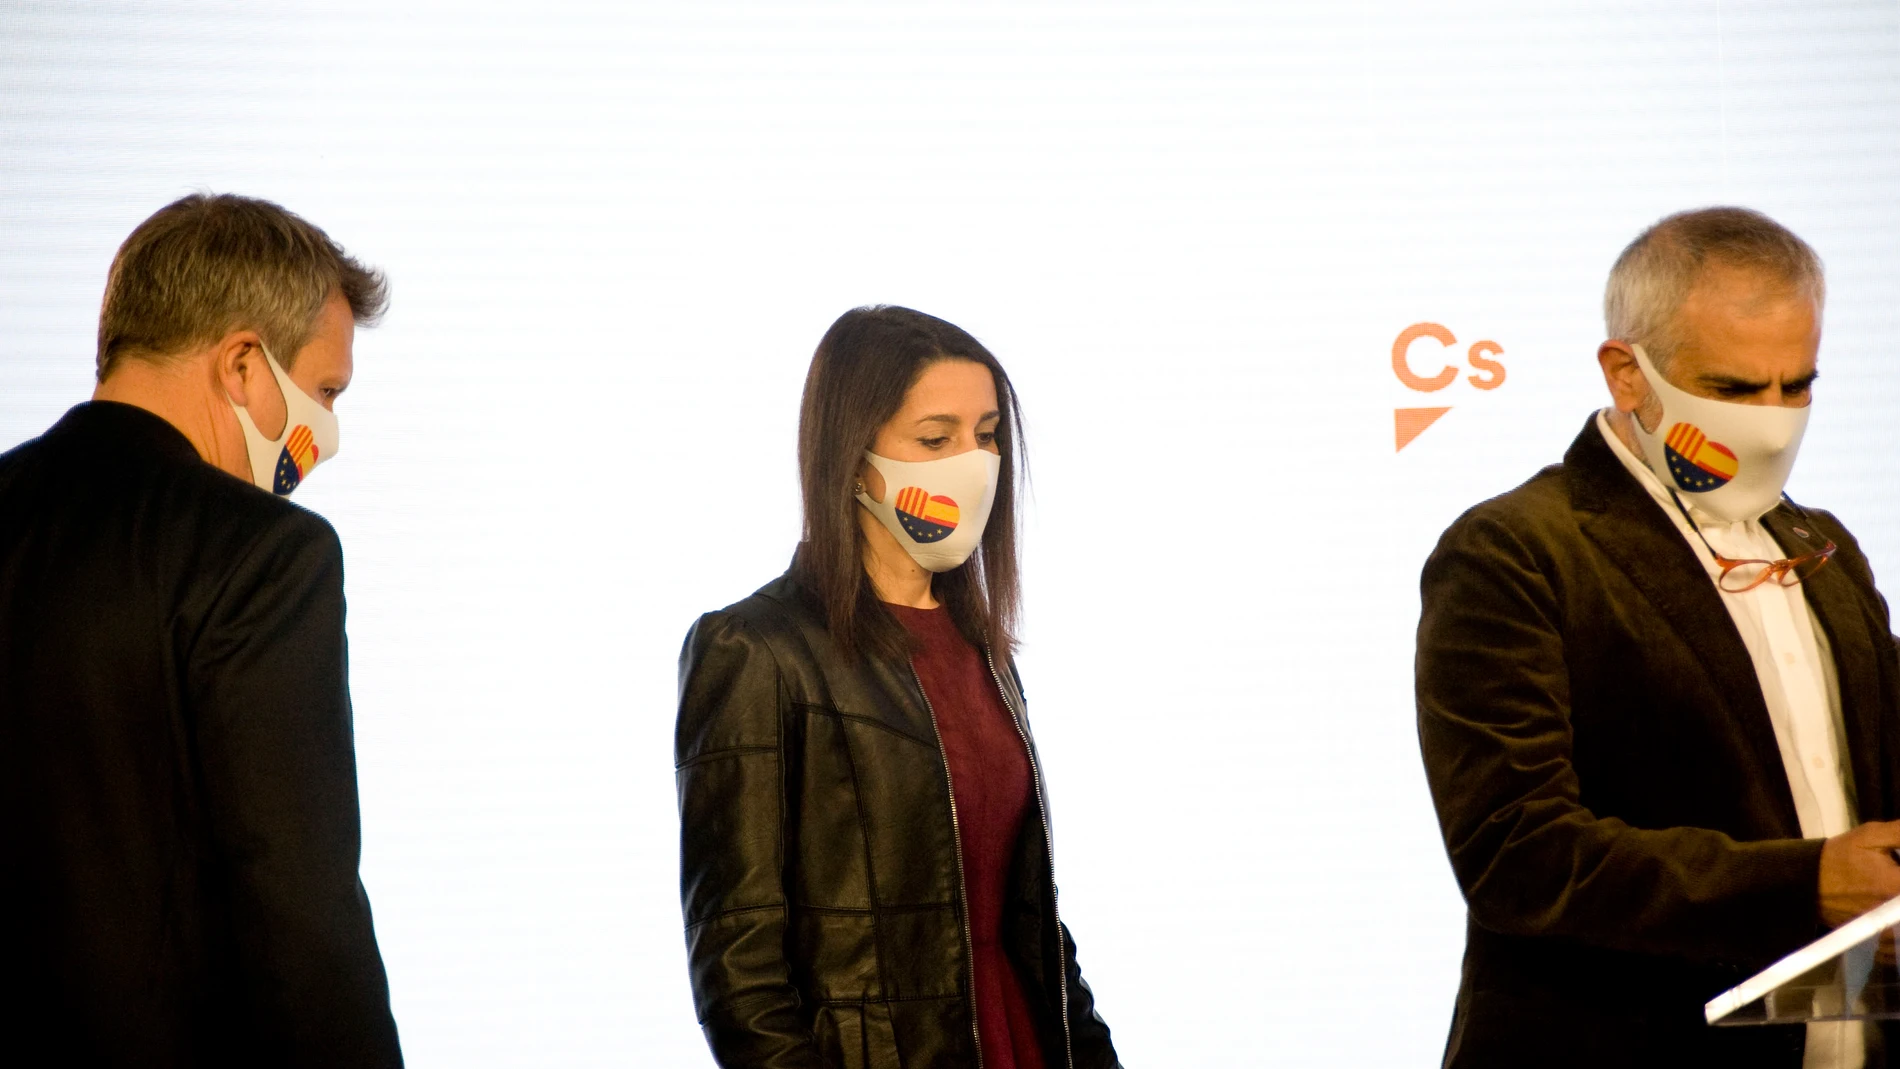 El líder de Cs en Cataluña, Carlos Carrizosa, la presidenta de Cs, Inés Arrimadas, y Carlos Cuadrado